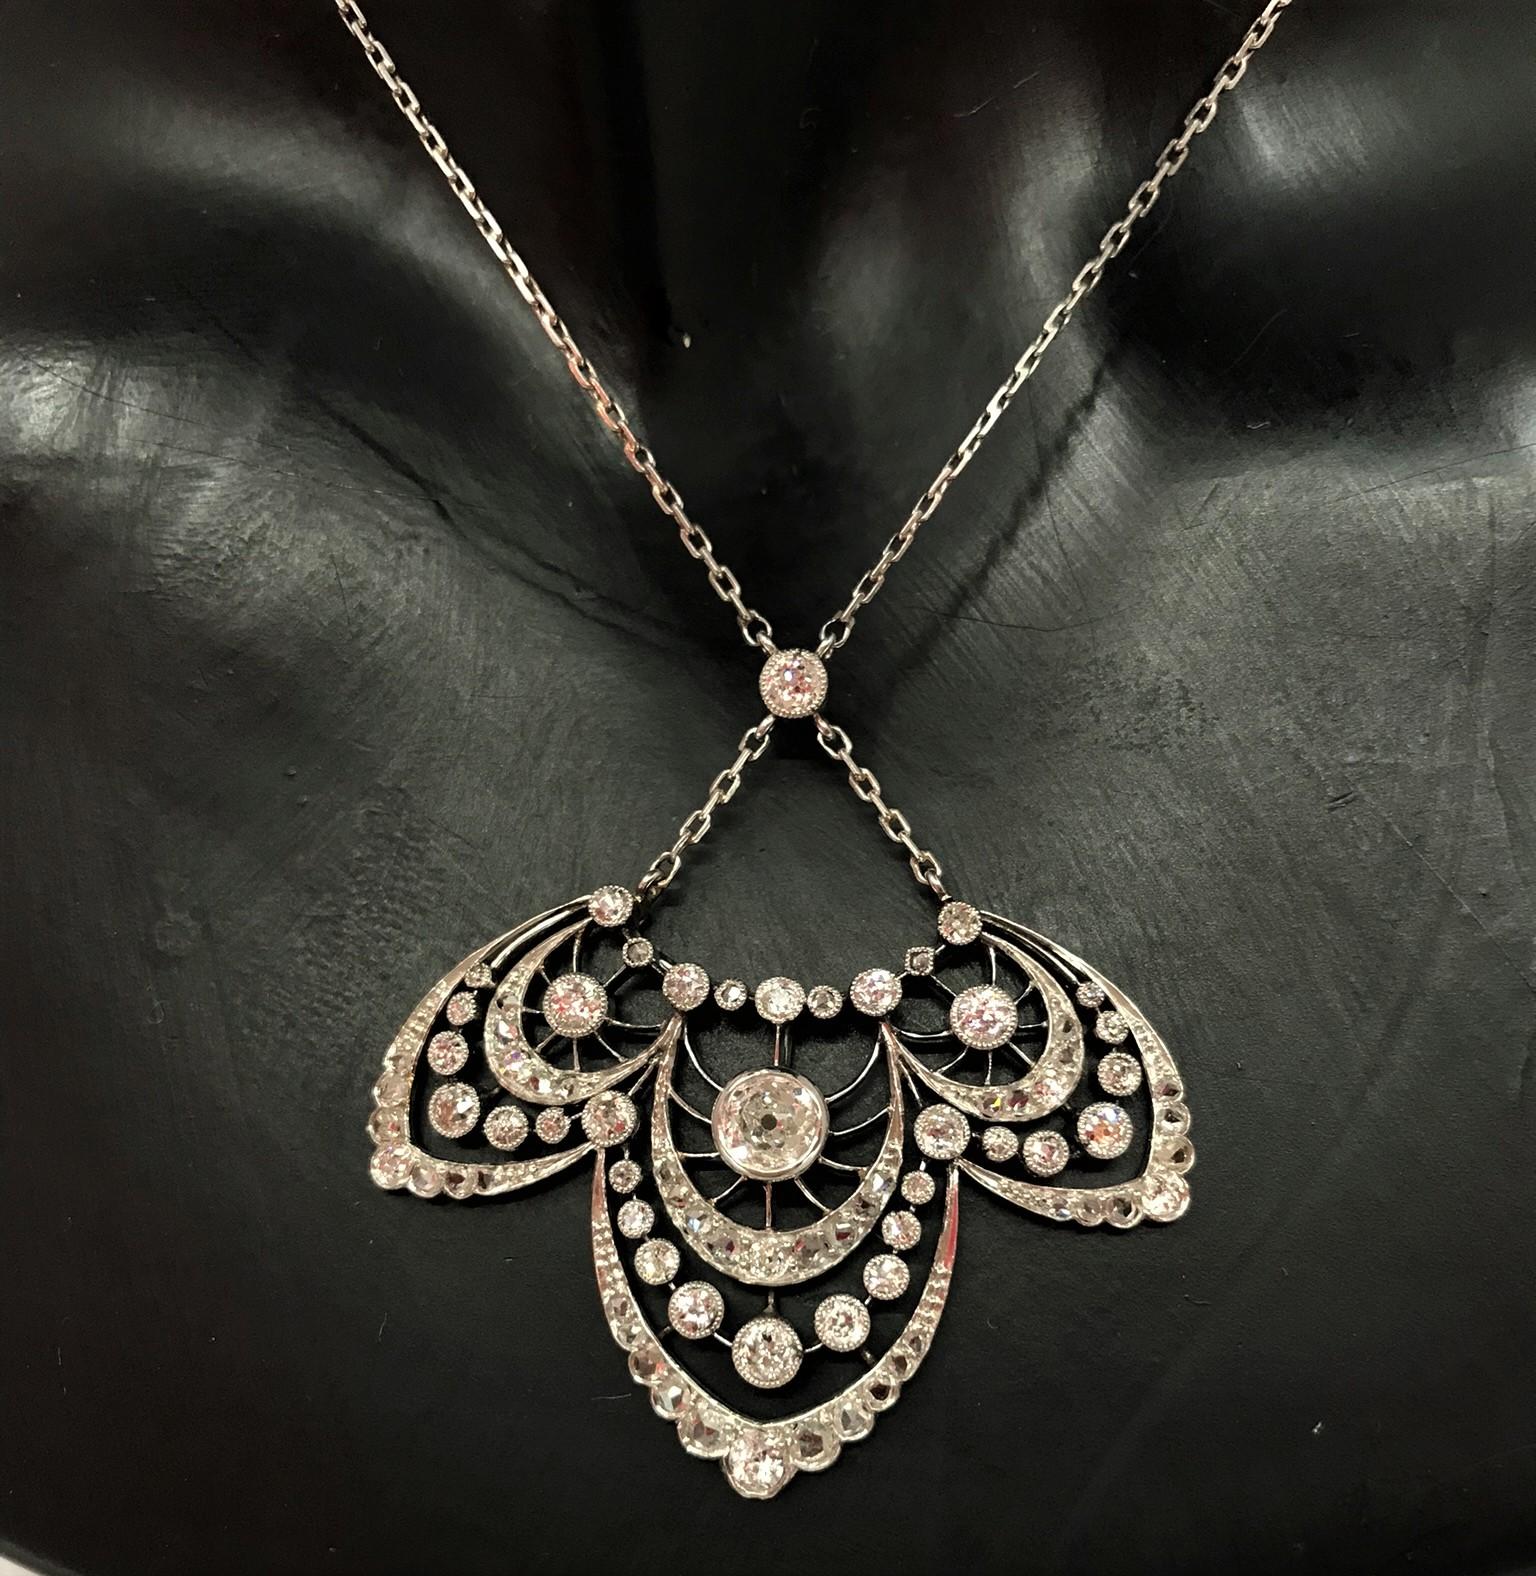 Ravissant collier pendentif en or 18 carats de forme trilobée, à décor de guirlandes serties de diamants de taille Rose et de taille Ancienne. Le poids des diamants est estimé à environ 2 carats.
Très joli modèle ajouré. Epoque vers 1900. Ce bijou